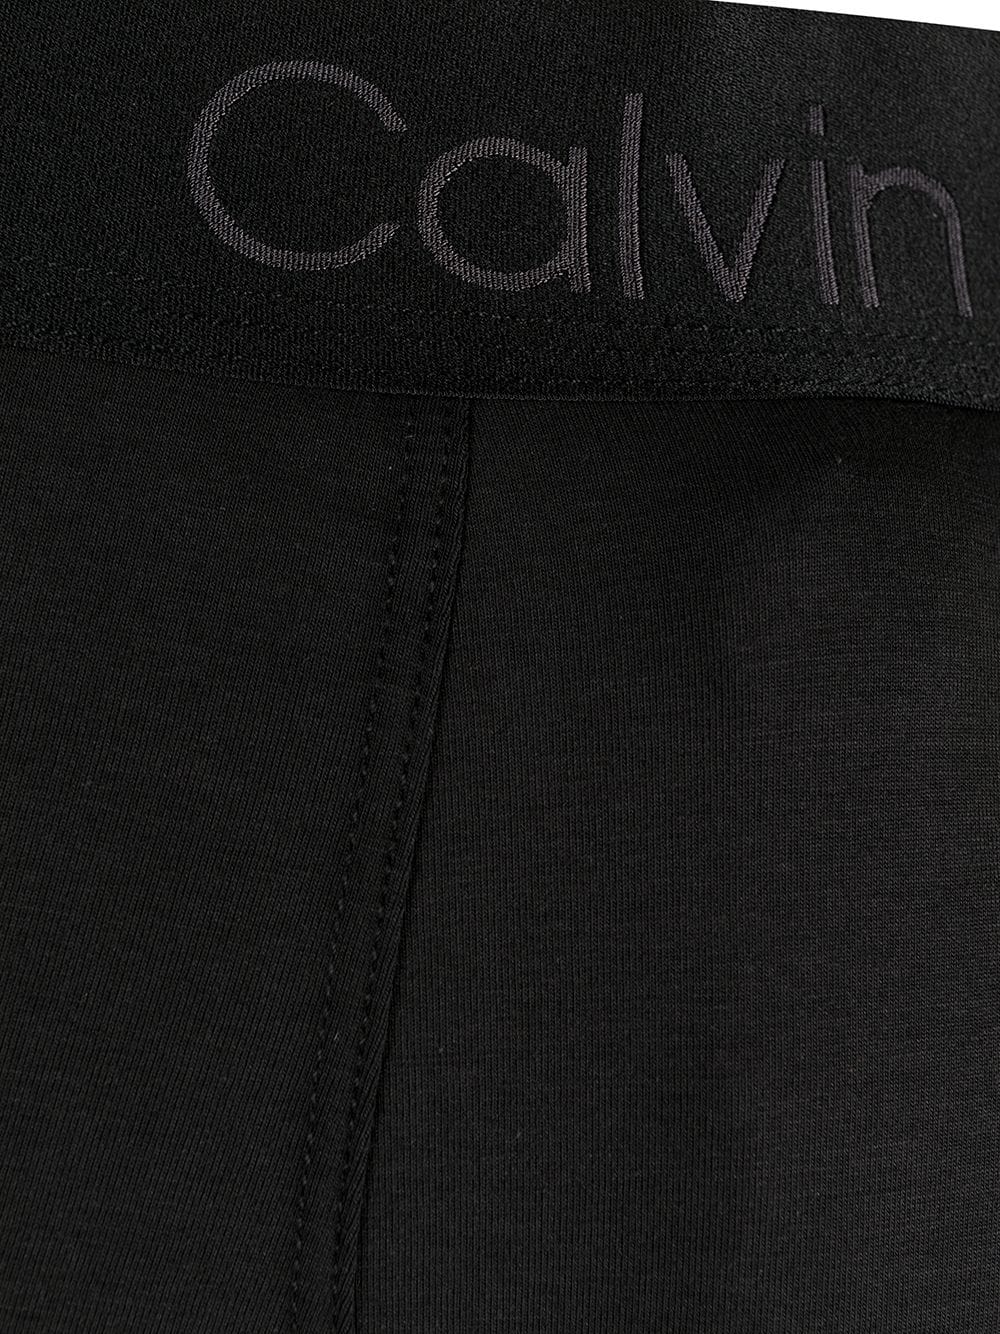 фото Calvin klein боксеры с логотипом